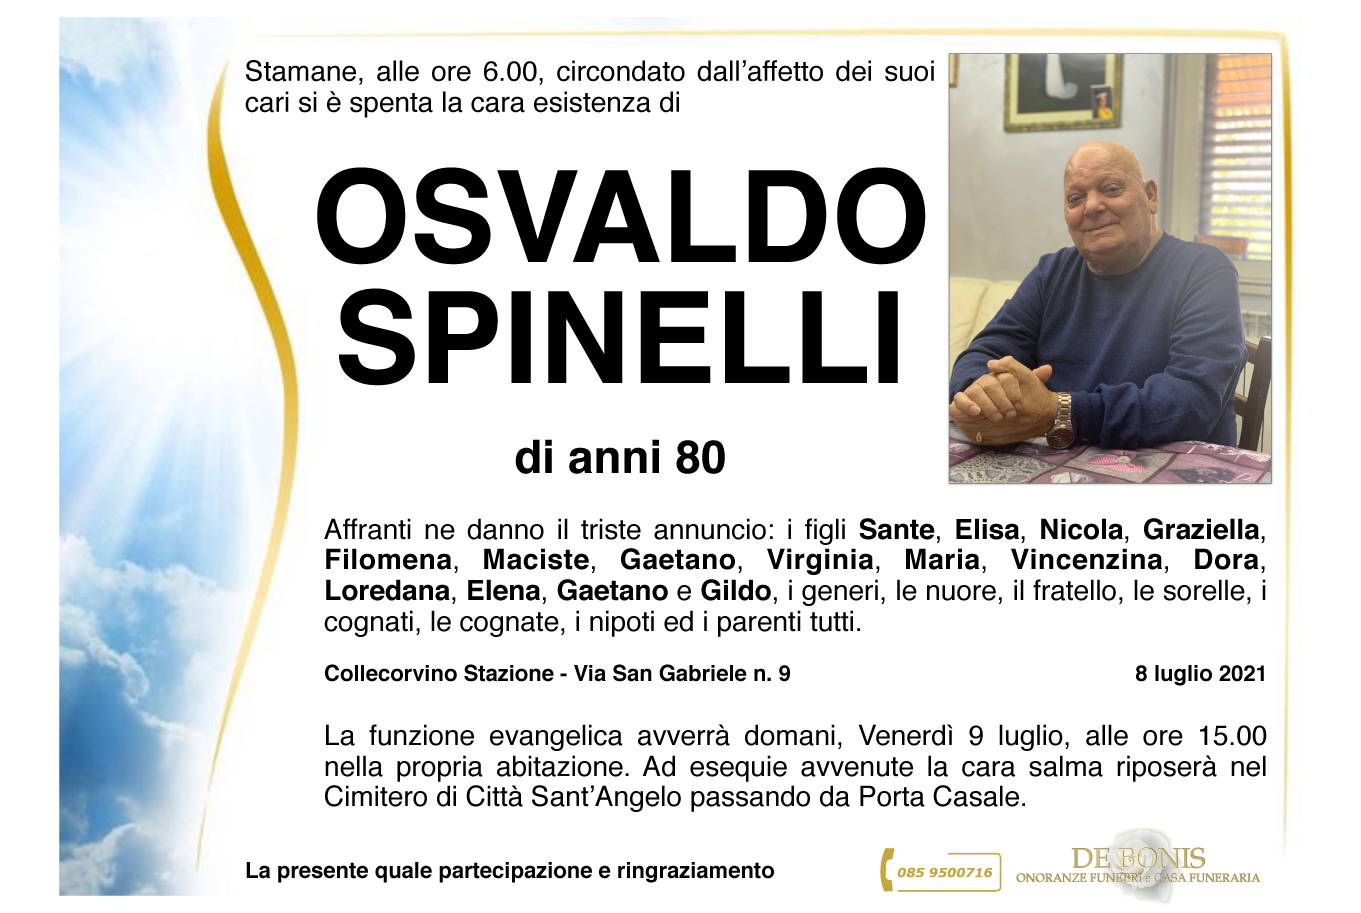 Osvaldo Spinelli